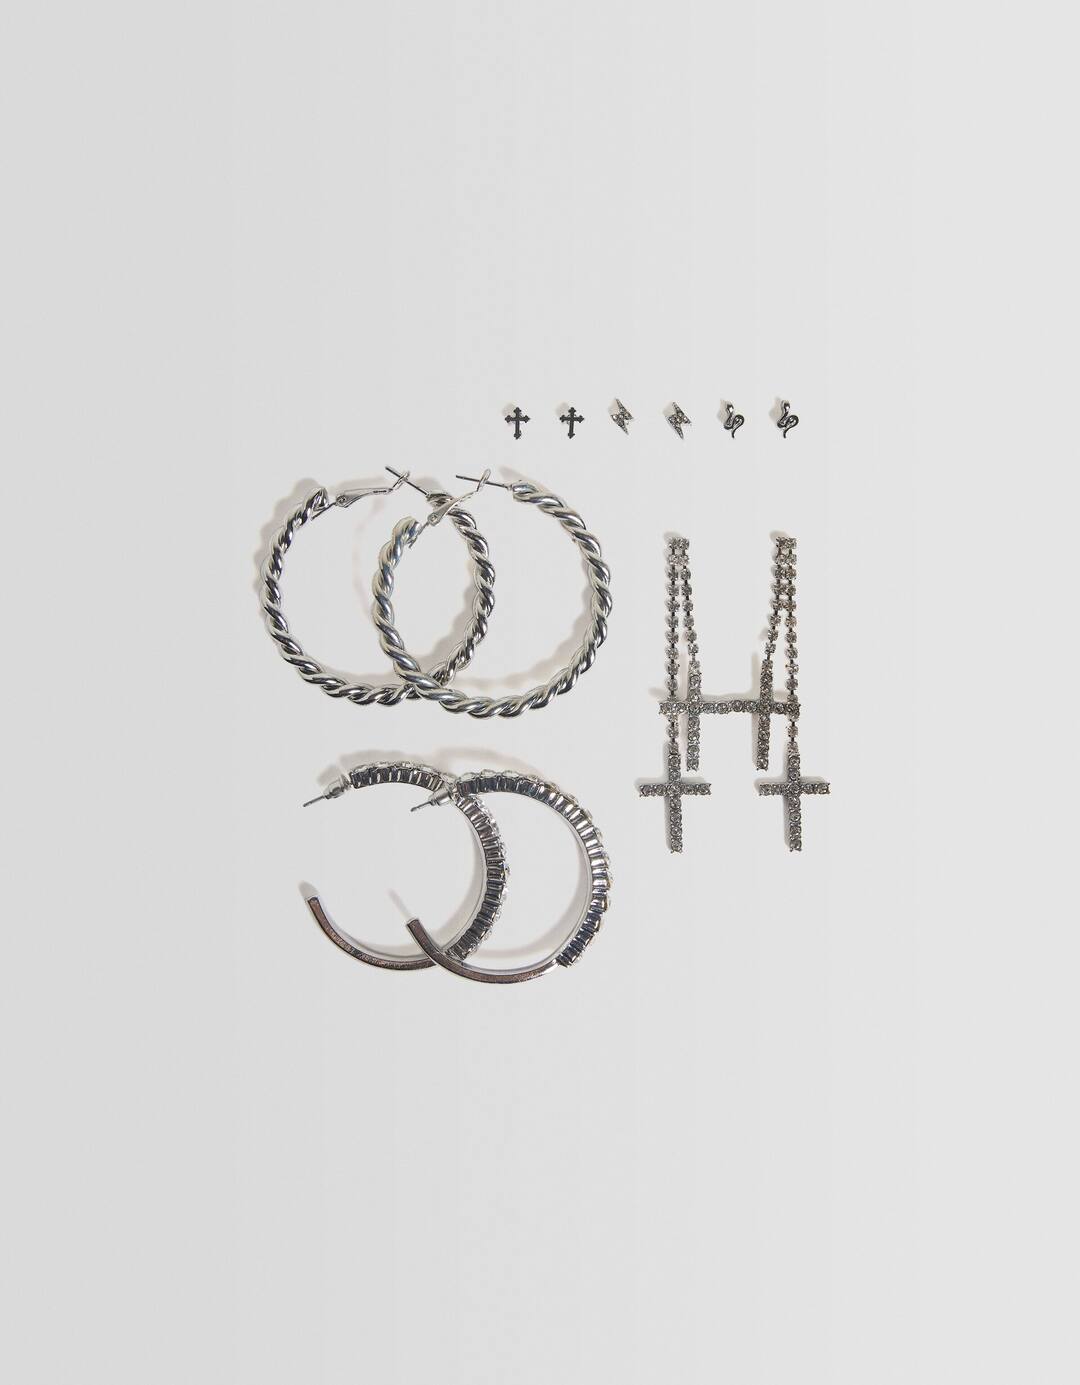 Set of 6 pairs of rhinestone cross earrings